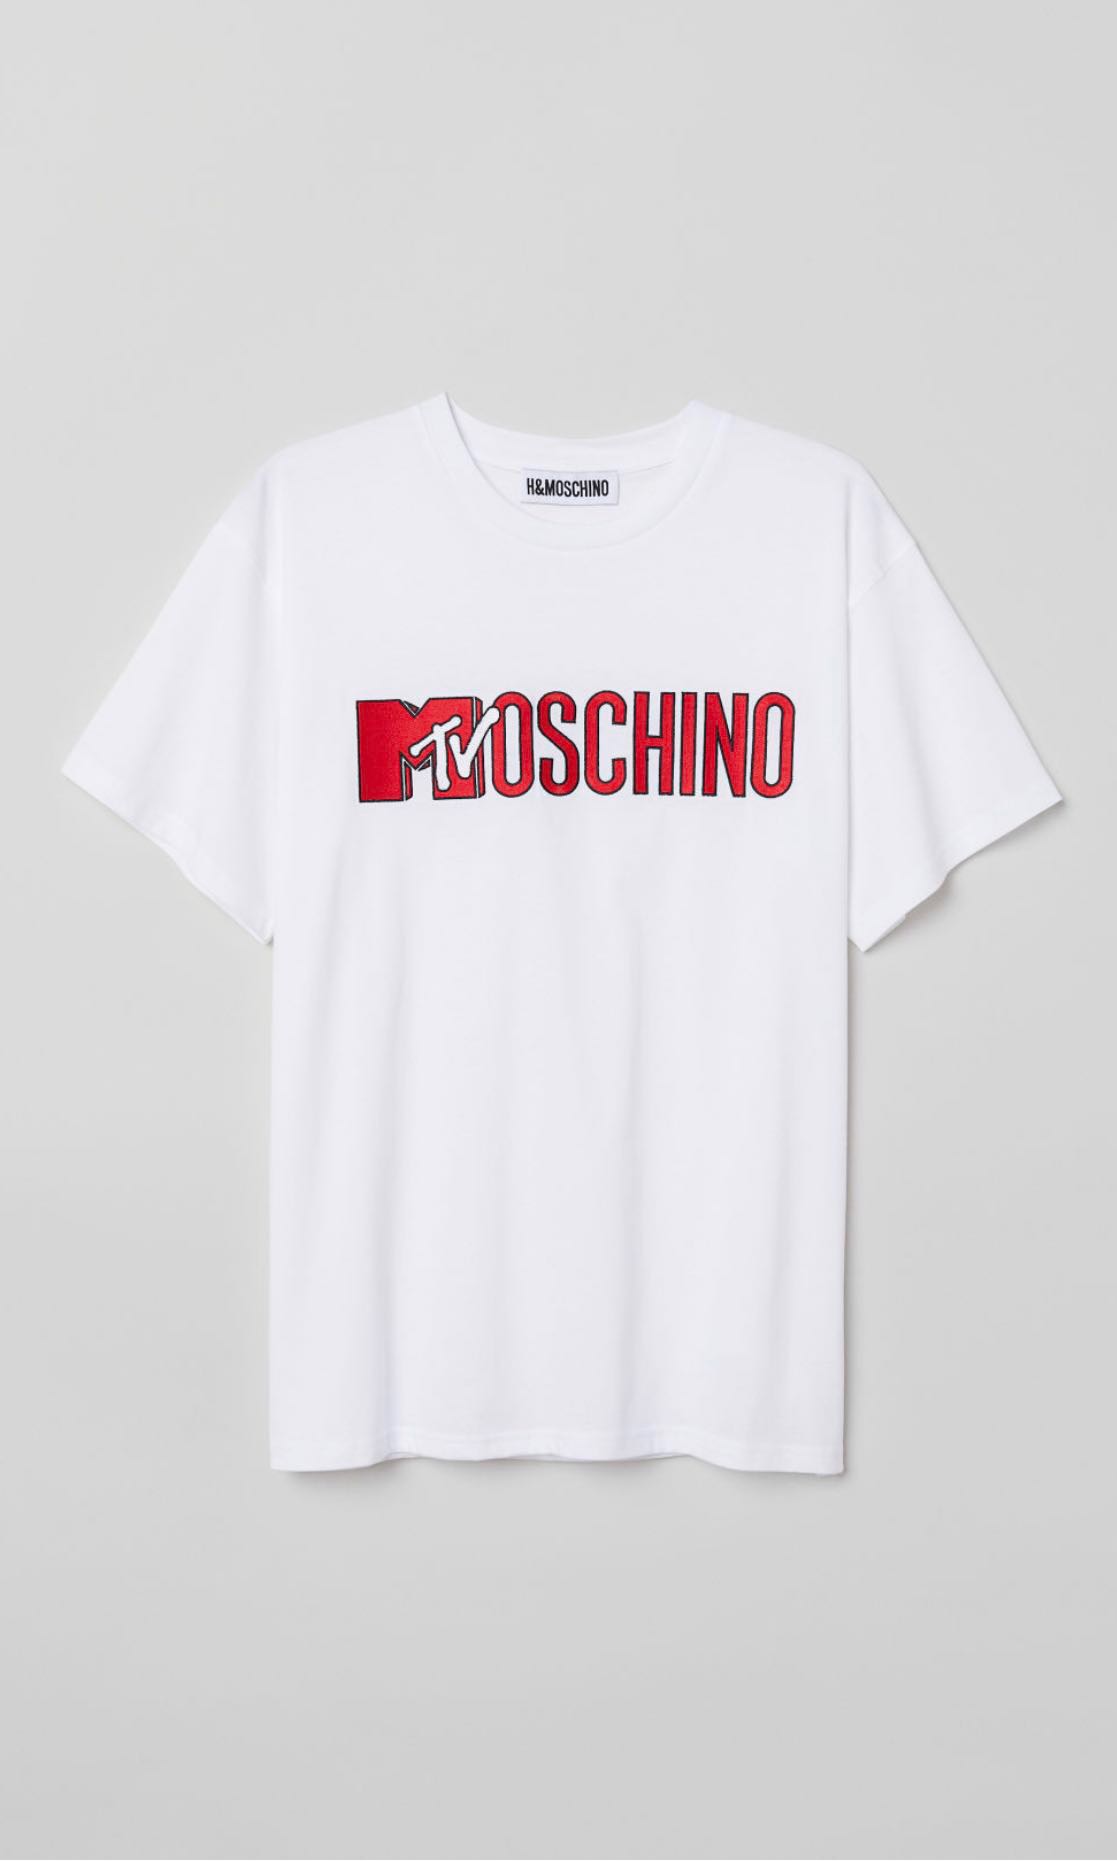 moschino shirt h&m